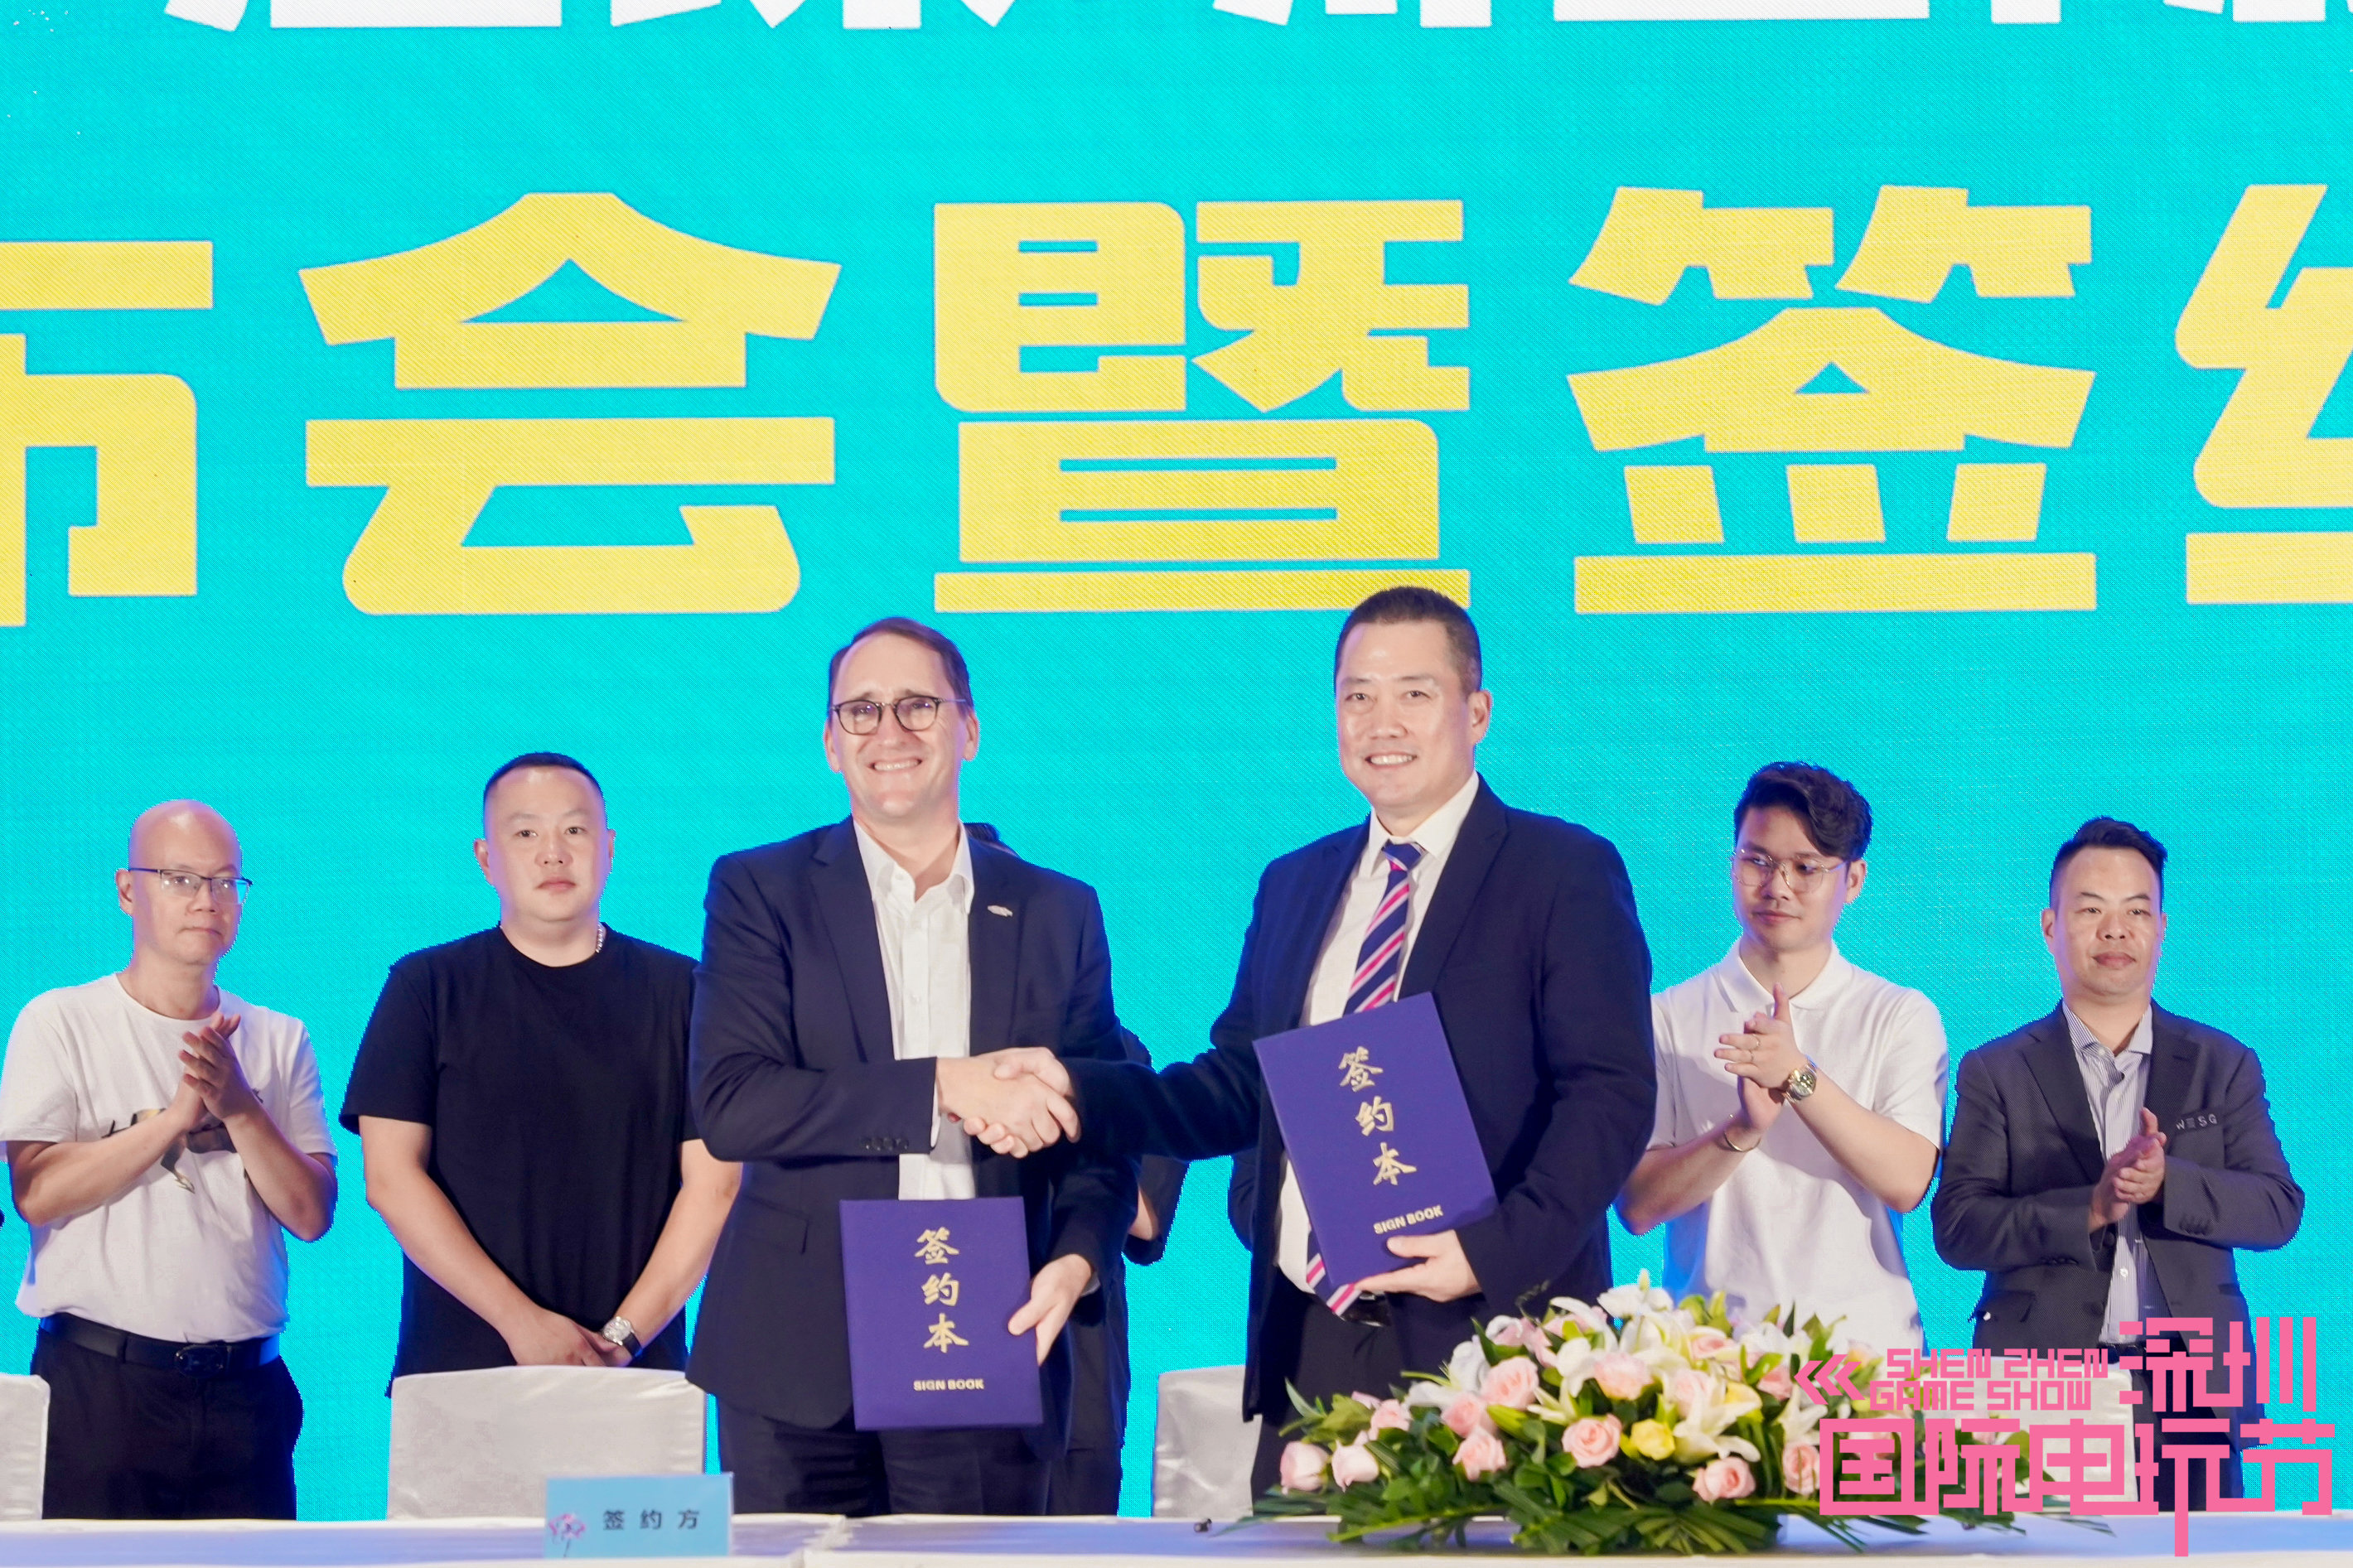 第十届深圳国际电玩节展览面积将扩容至10万平方米